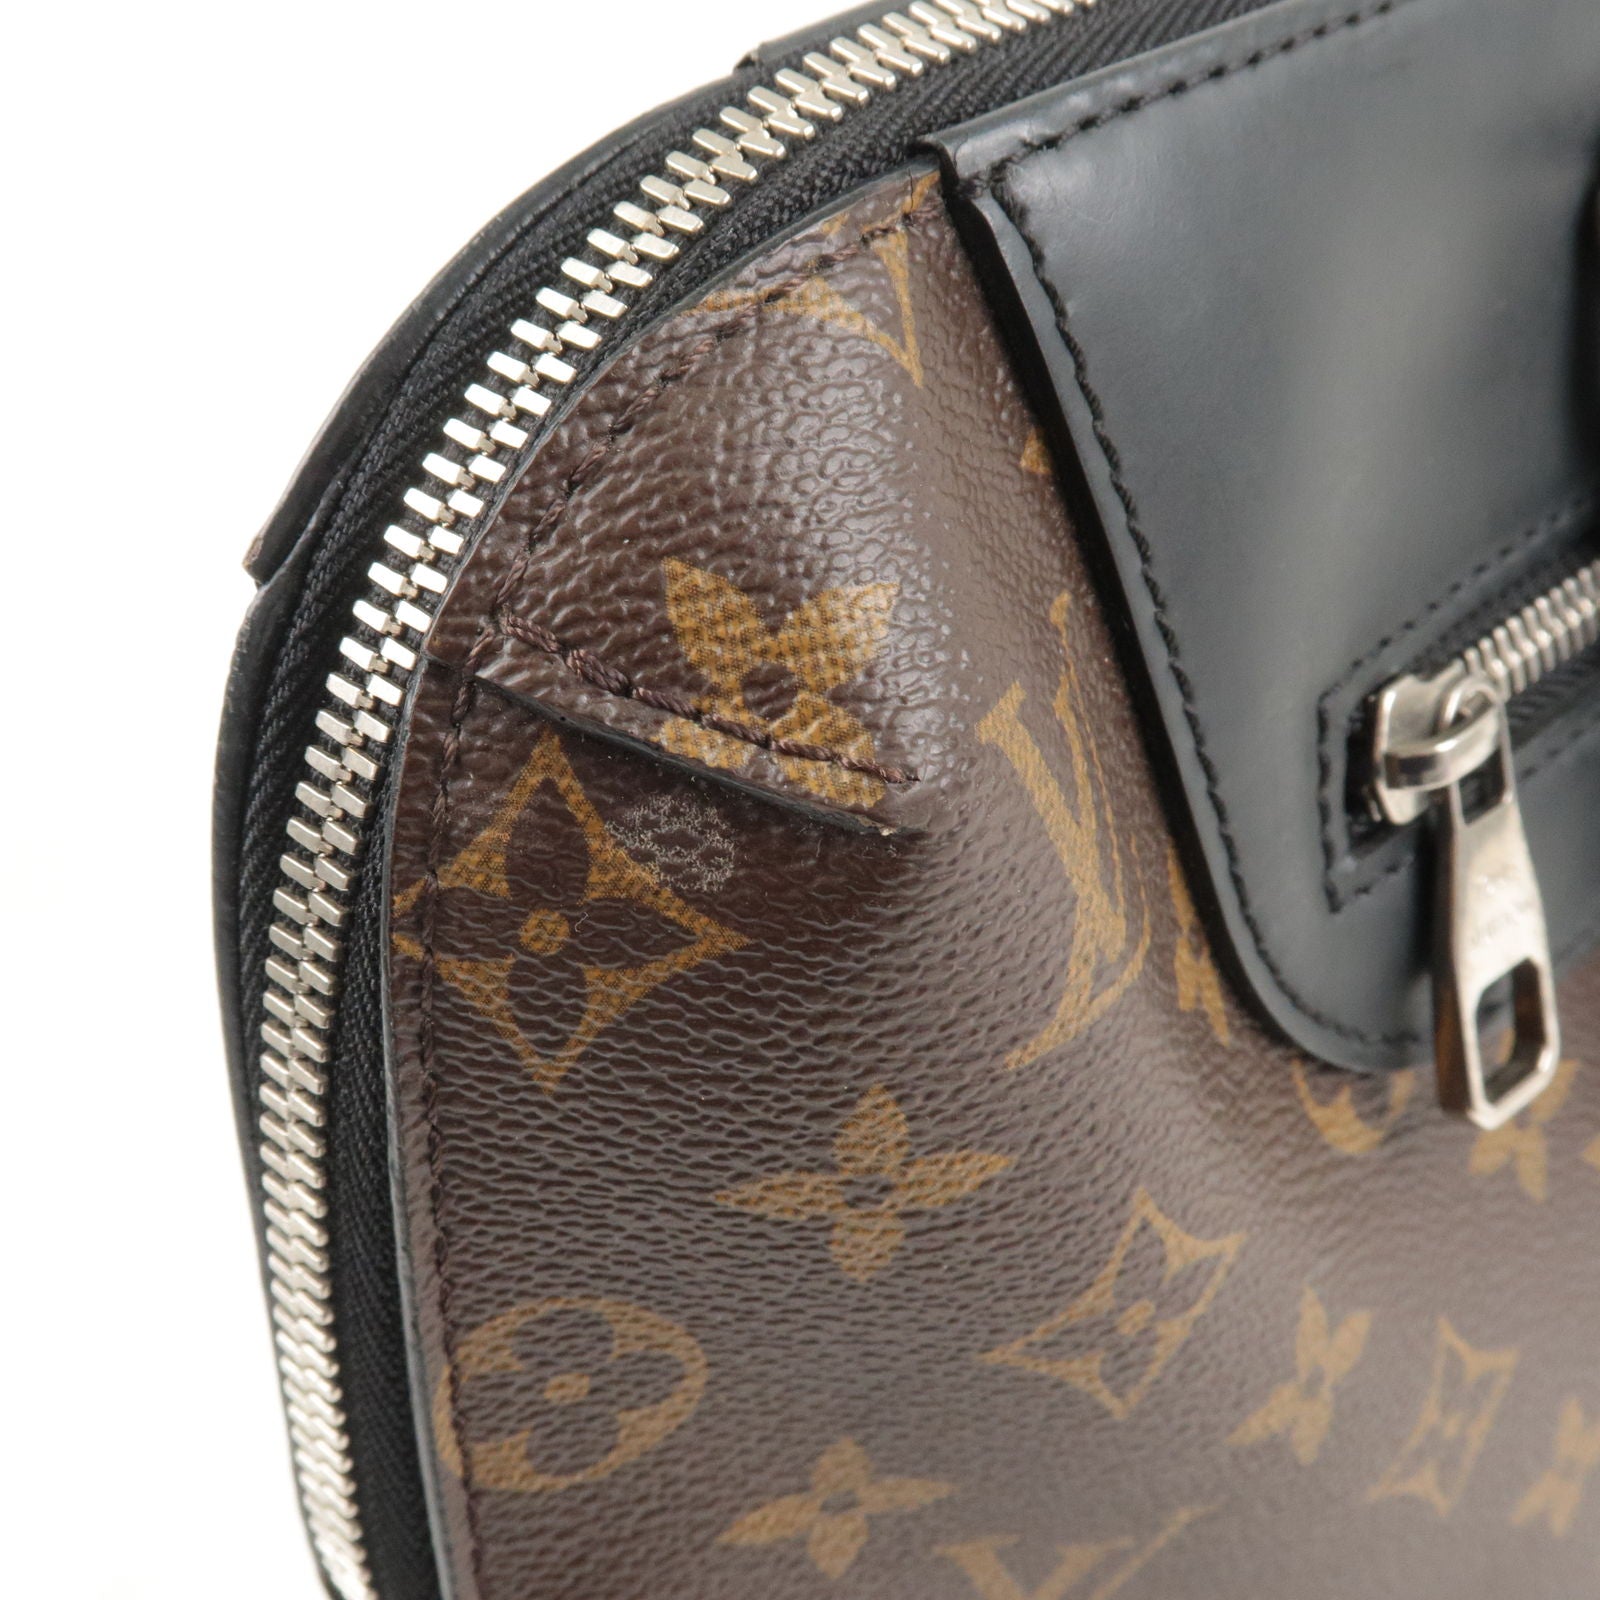 Porte documents jour leather travel bag Louis Vuitton Black in